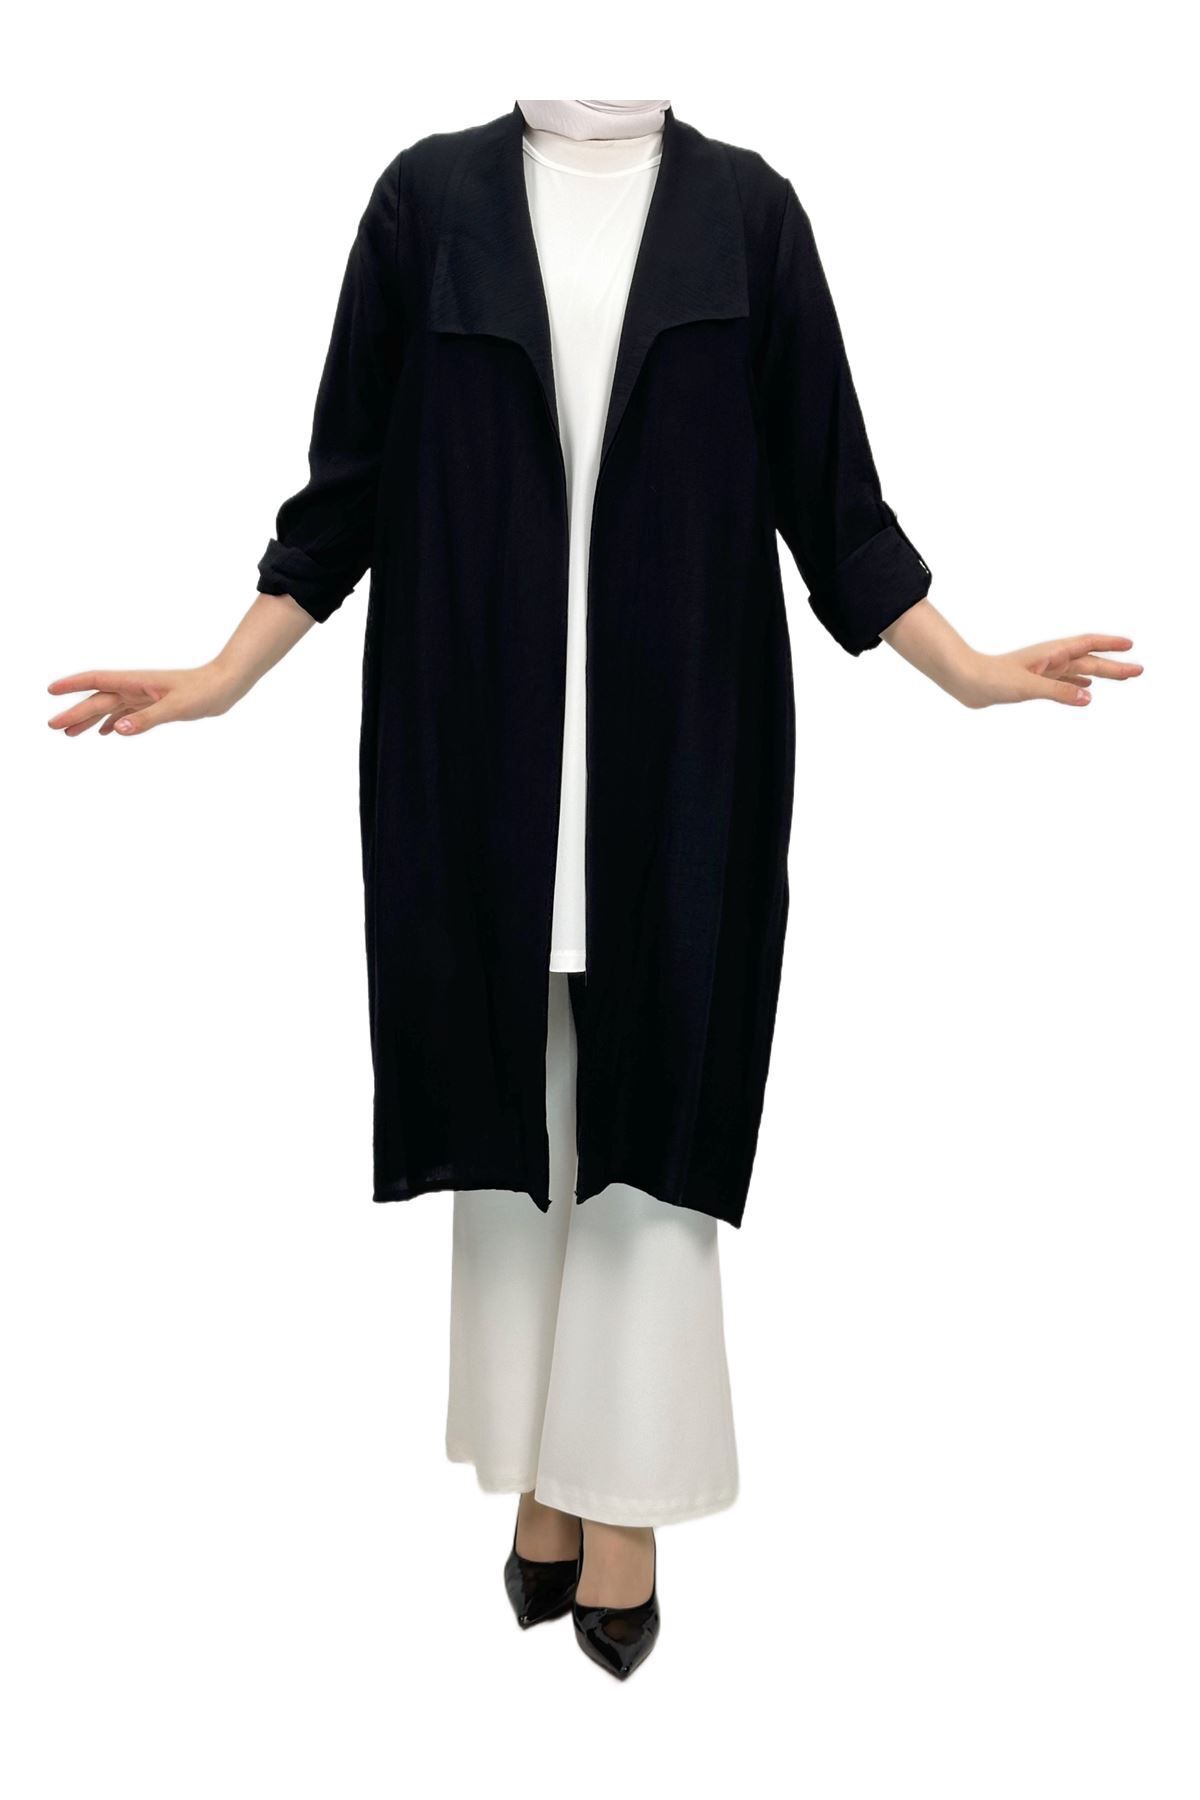 ottoman wear OTW48347 Ceket ve Bluz İkili Takım Siyah